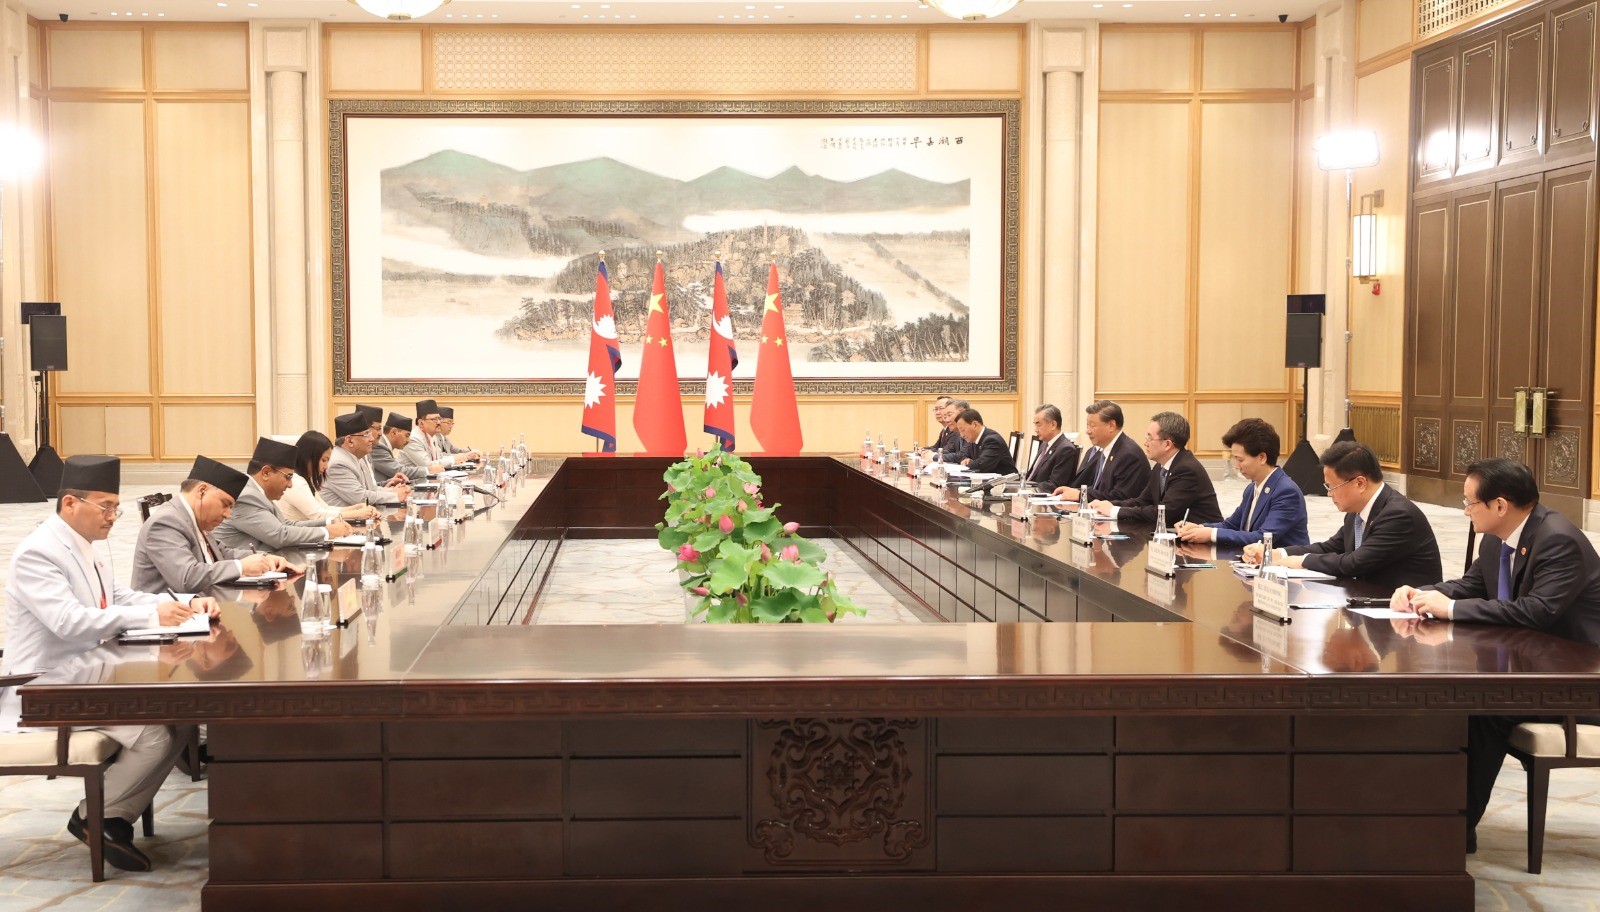 प्रधानमन्त्री दाहाल र चीनका राष्ट्रपति सीबीच ऐतिहासिक भेटवार्ता